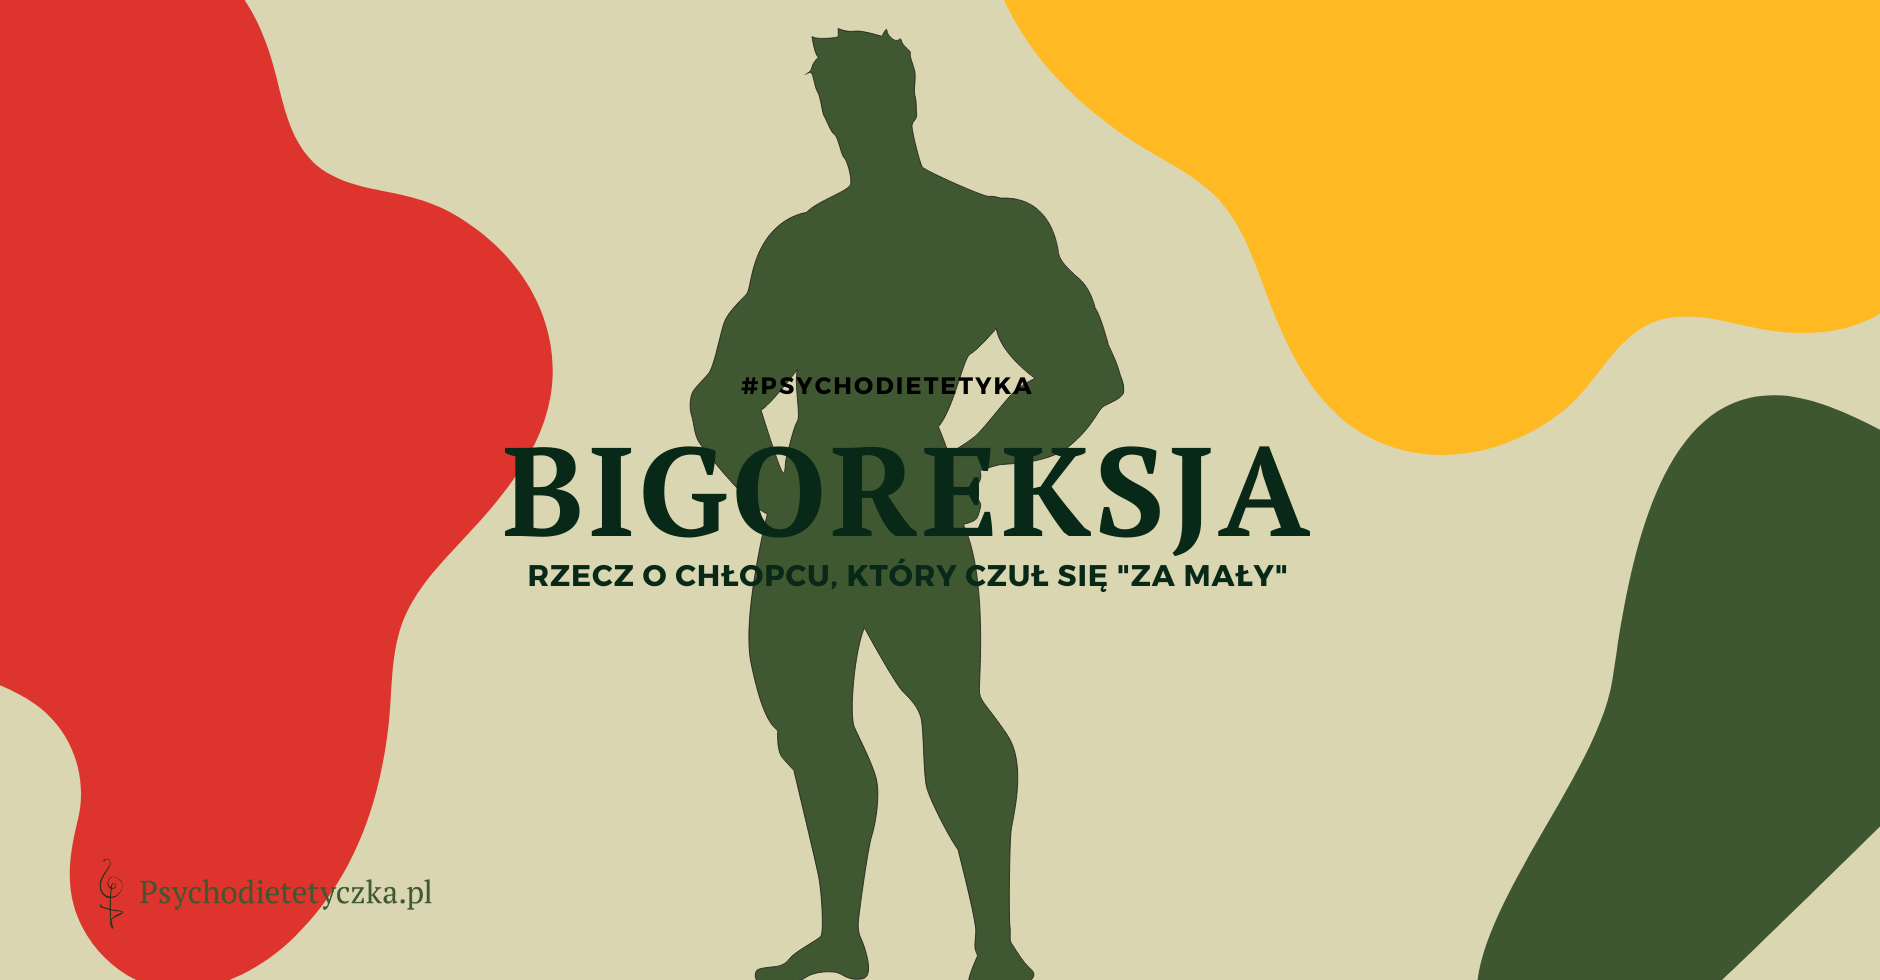 bigoreksja-blog-dietetyczny-gdansk-psychodietetyczka